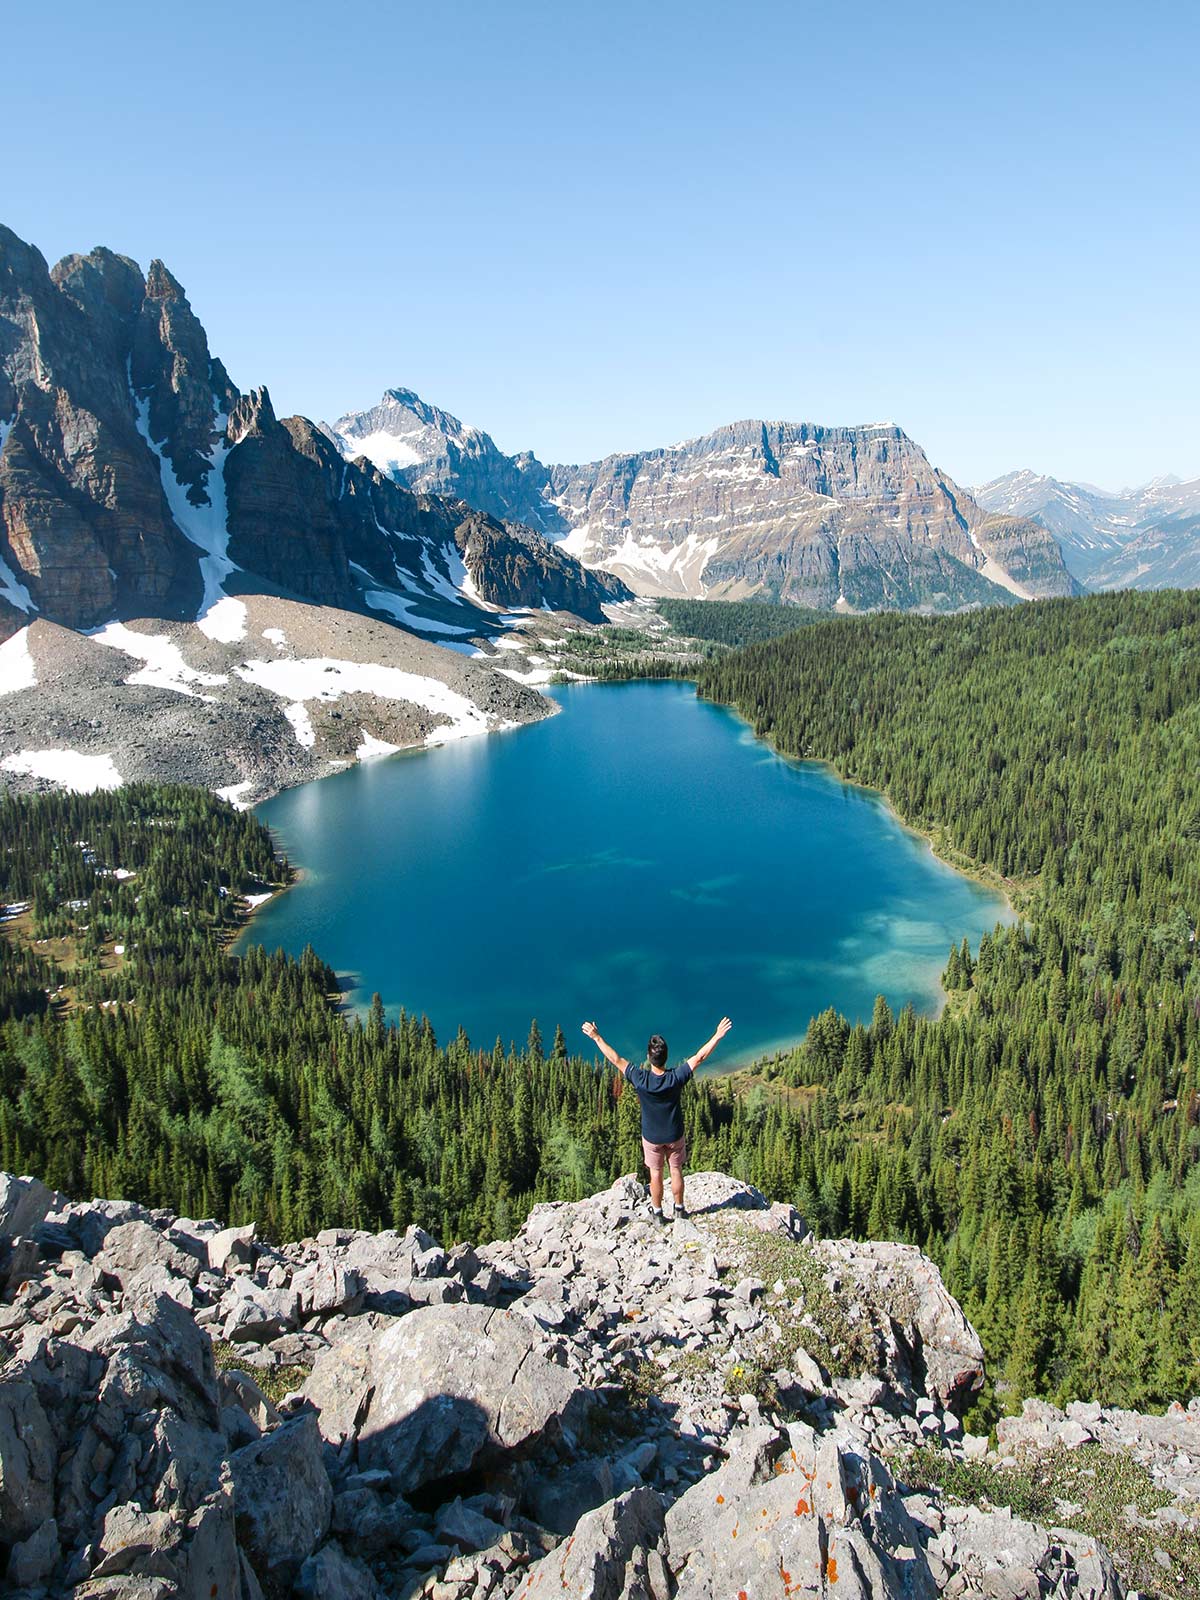 Lac Cérulean, Randonnée du Niblet, Mont Assiniboine, Colombie-Britannique, Rocheuses, Canada / Cerulean Lake, Niblet hike, Mount Assiniboine, British Columbia, Rockies, Canada.